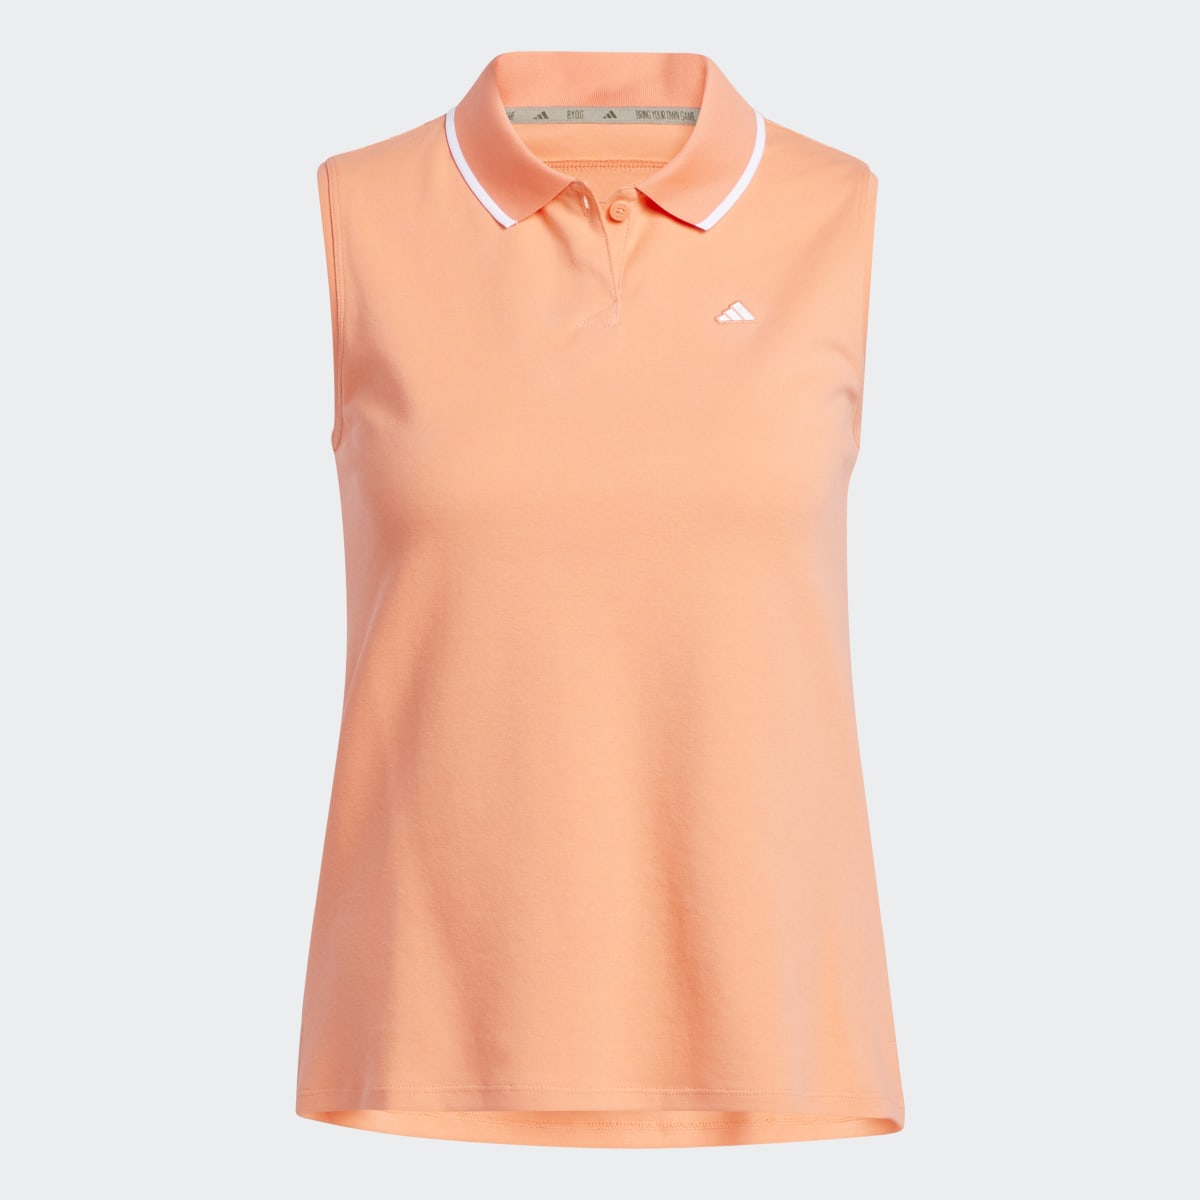 Adidas Go-To Piqué Sleeveless Golf Polo Shirt. 5